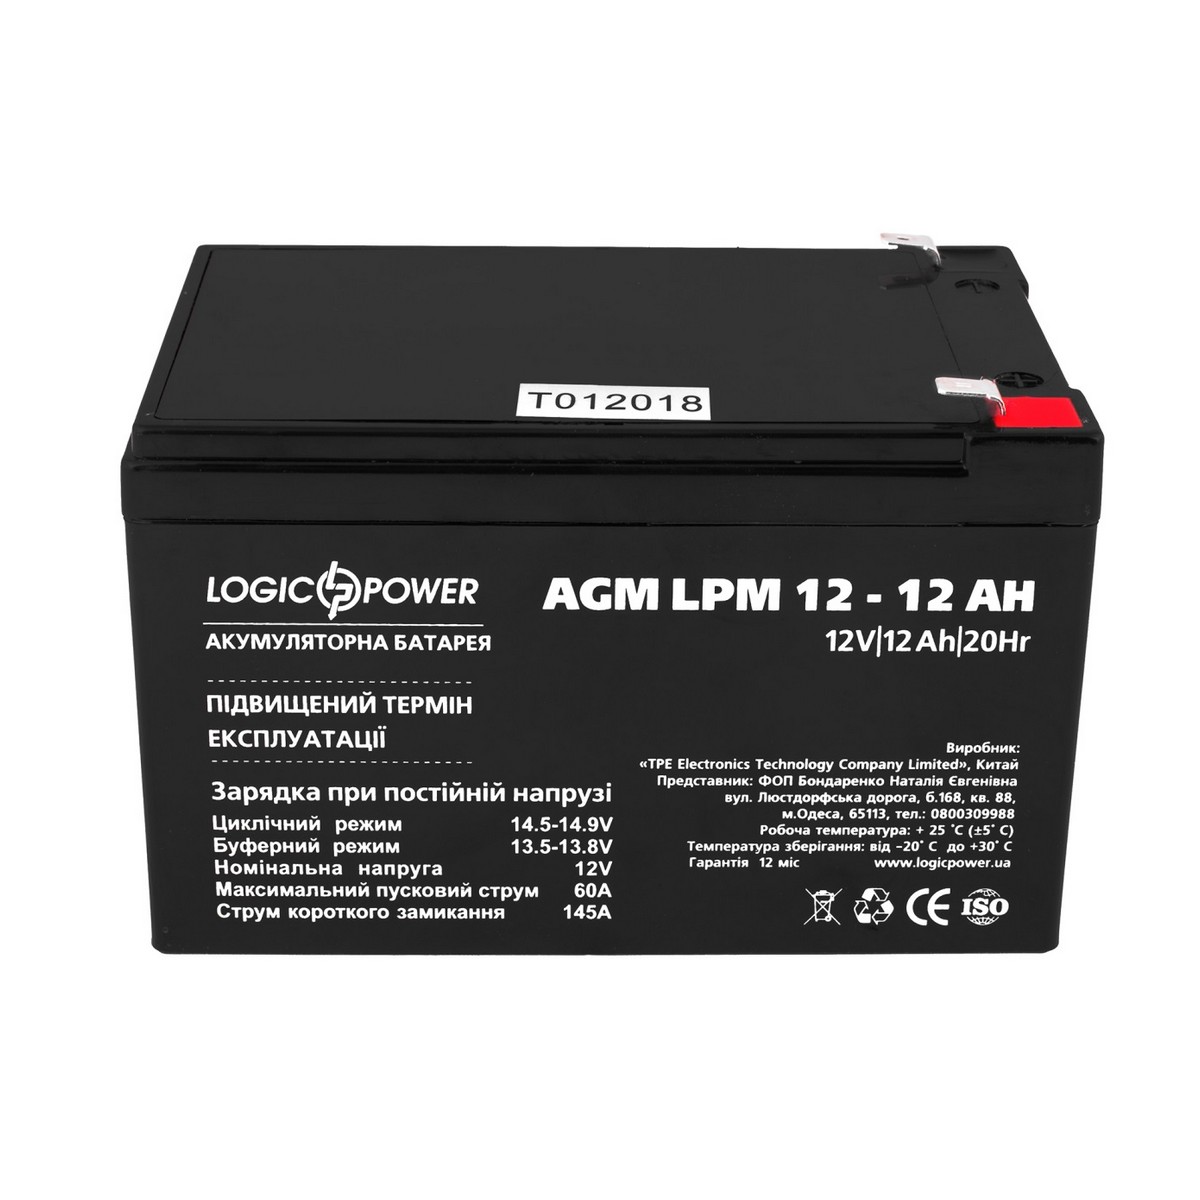 Аккумуляторная батарея LogicPower LPM 12V 12AH (LPM 12 - 12 AH) AGM